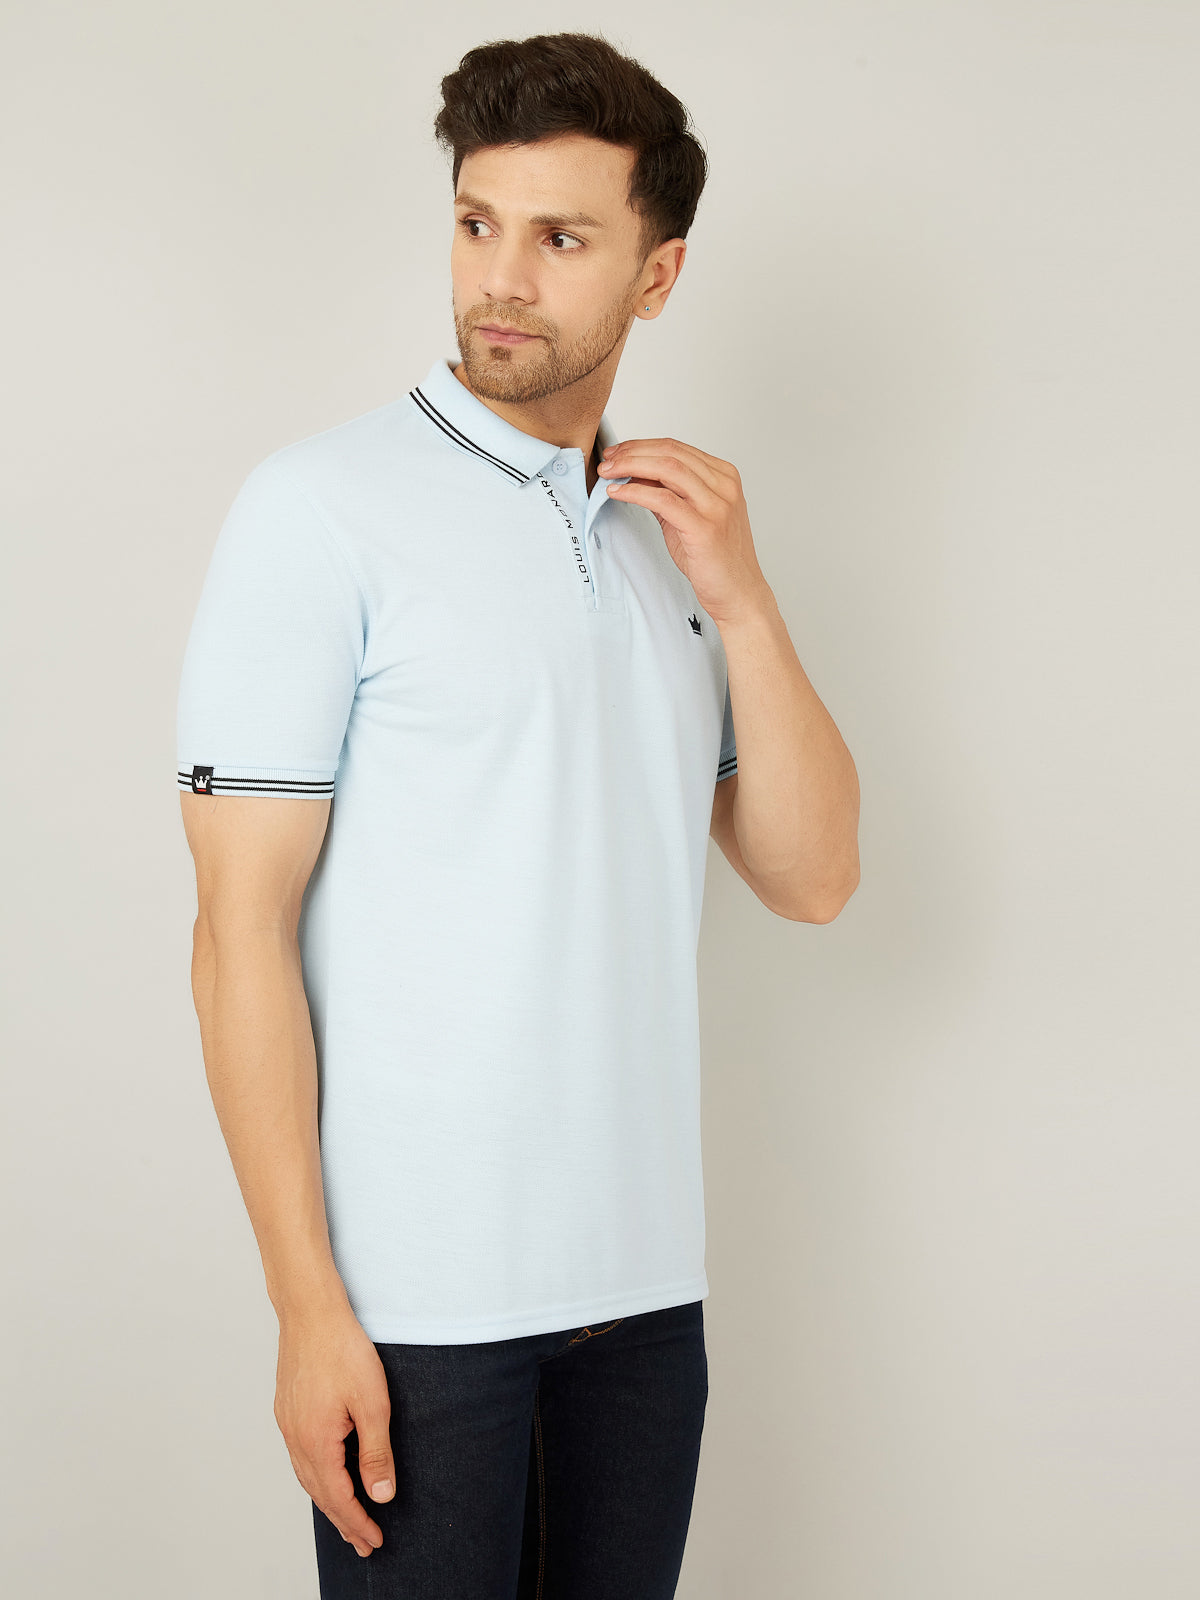 Louis Monarch Men Solid Polo Sky Blue Cotton Blend T-Shirt